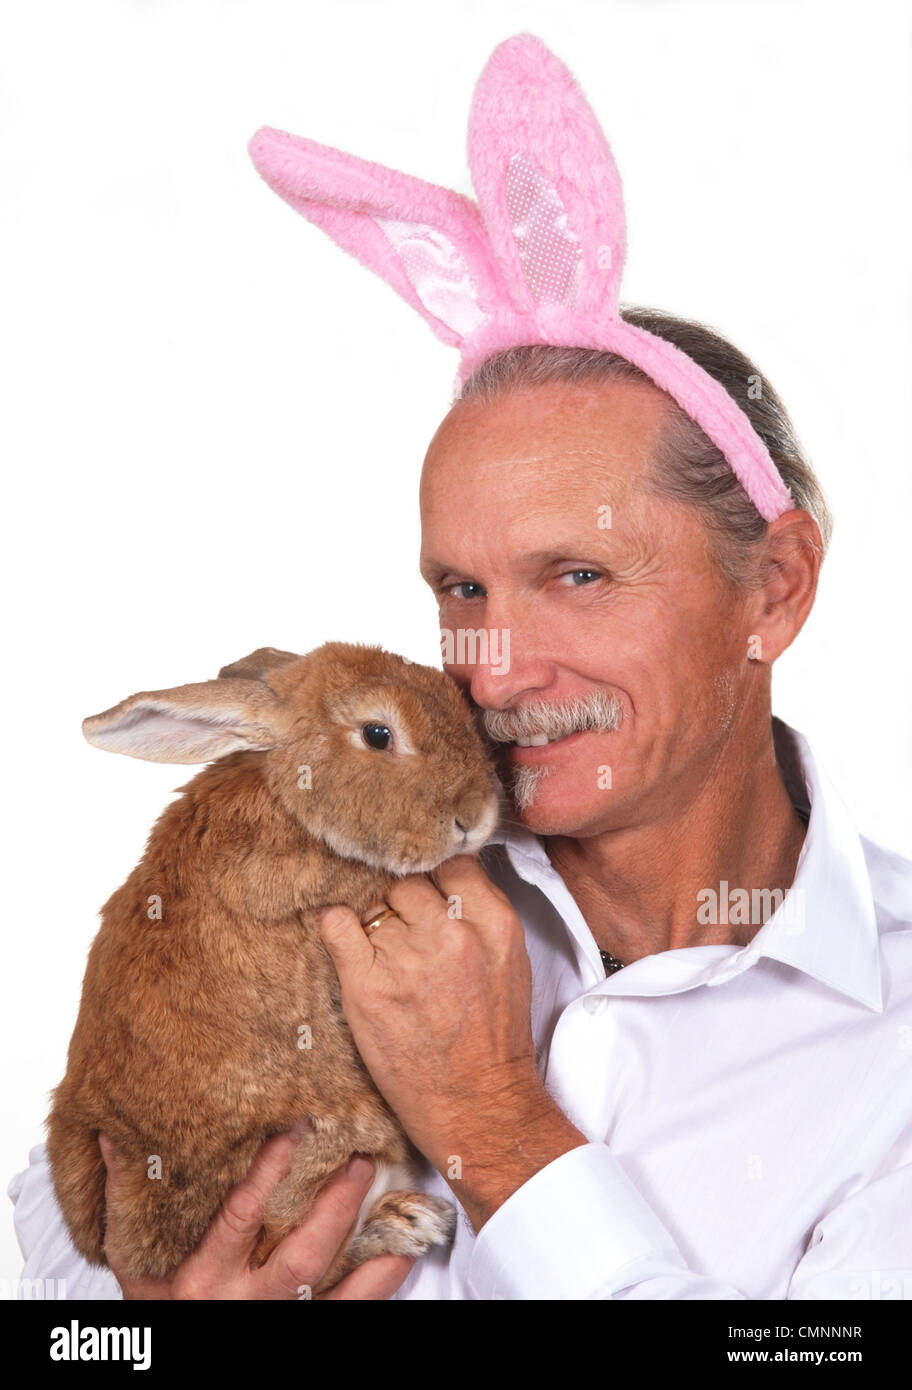 Lächelnder Mann trägt Hasenohren und hält ein Kaninchen. Stockfoto